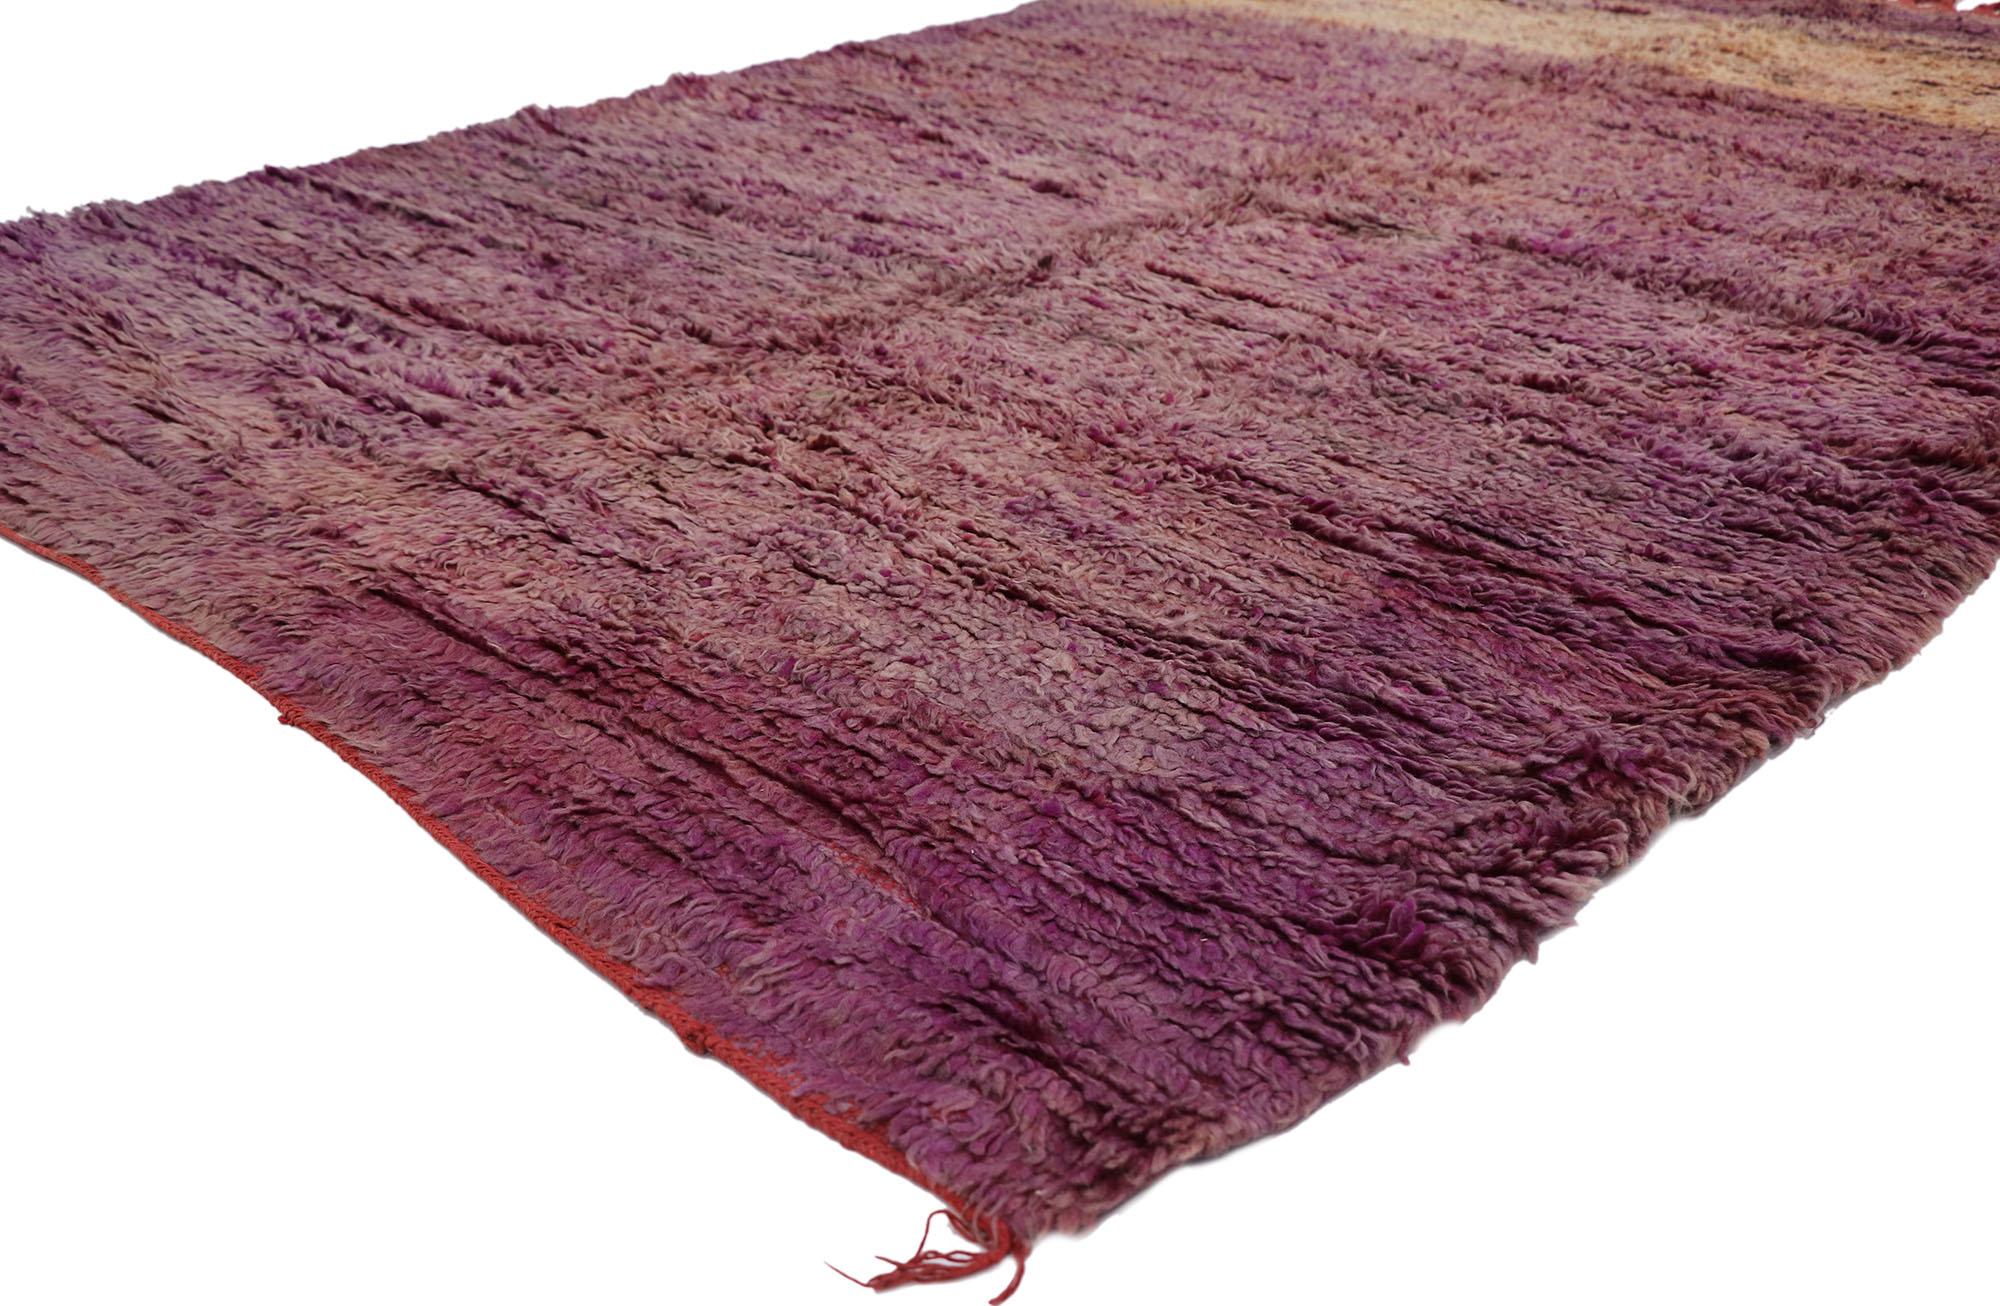 21425 Vintage Beni Mrirt Marokkanischer Teppich, 05'06 x 08'00.
Expressionistischer Stil trifft auf Schlichtheit in diesem handgeknüpften marokkanischen Beni Mrirt-Teppich aus Wolle. Durchdrungen von Rost- und Violetttönen, verlaufen die satten